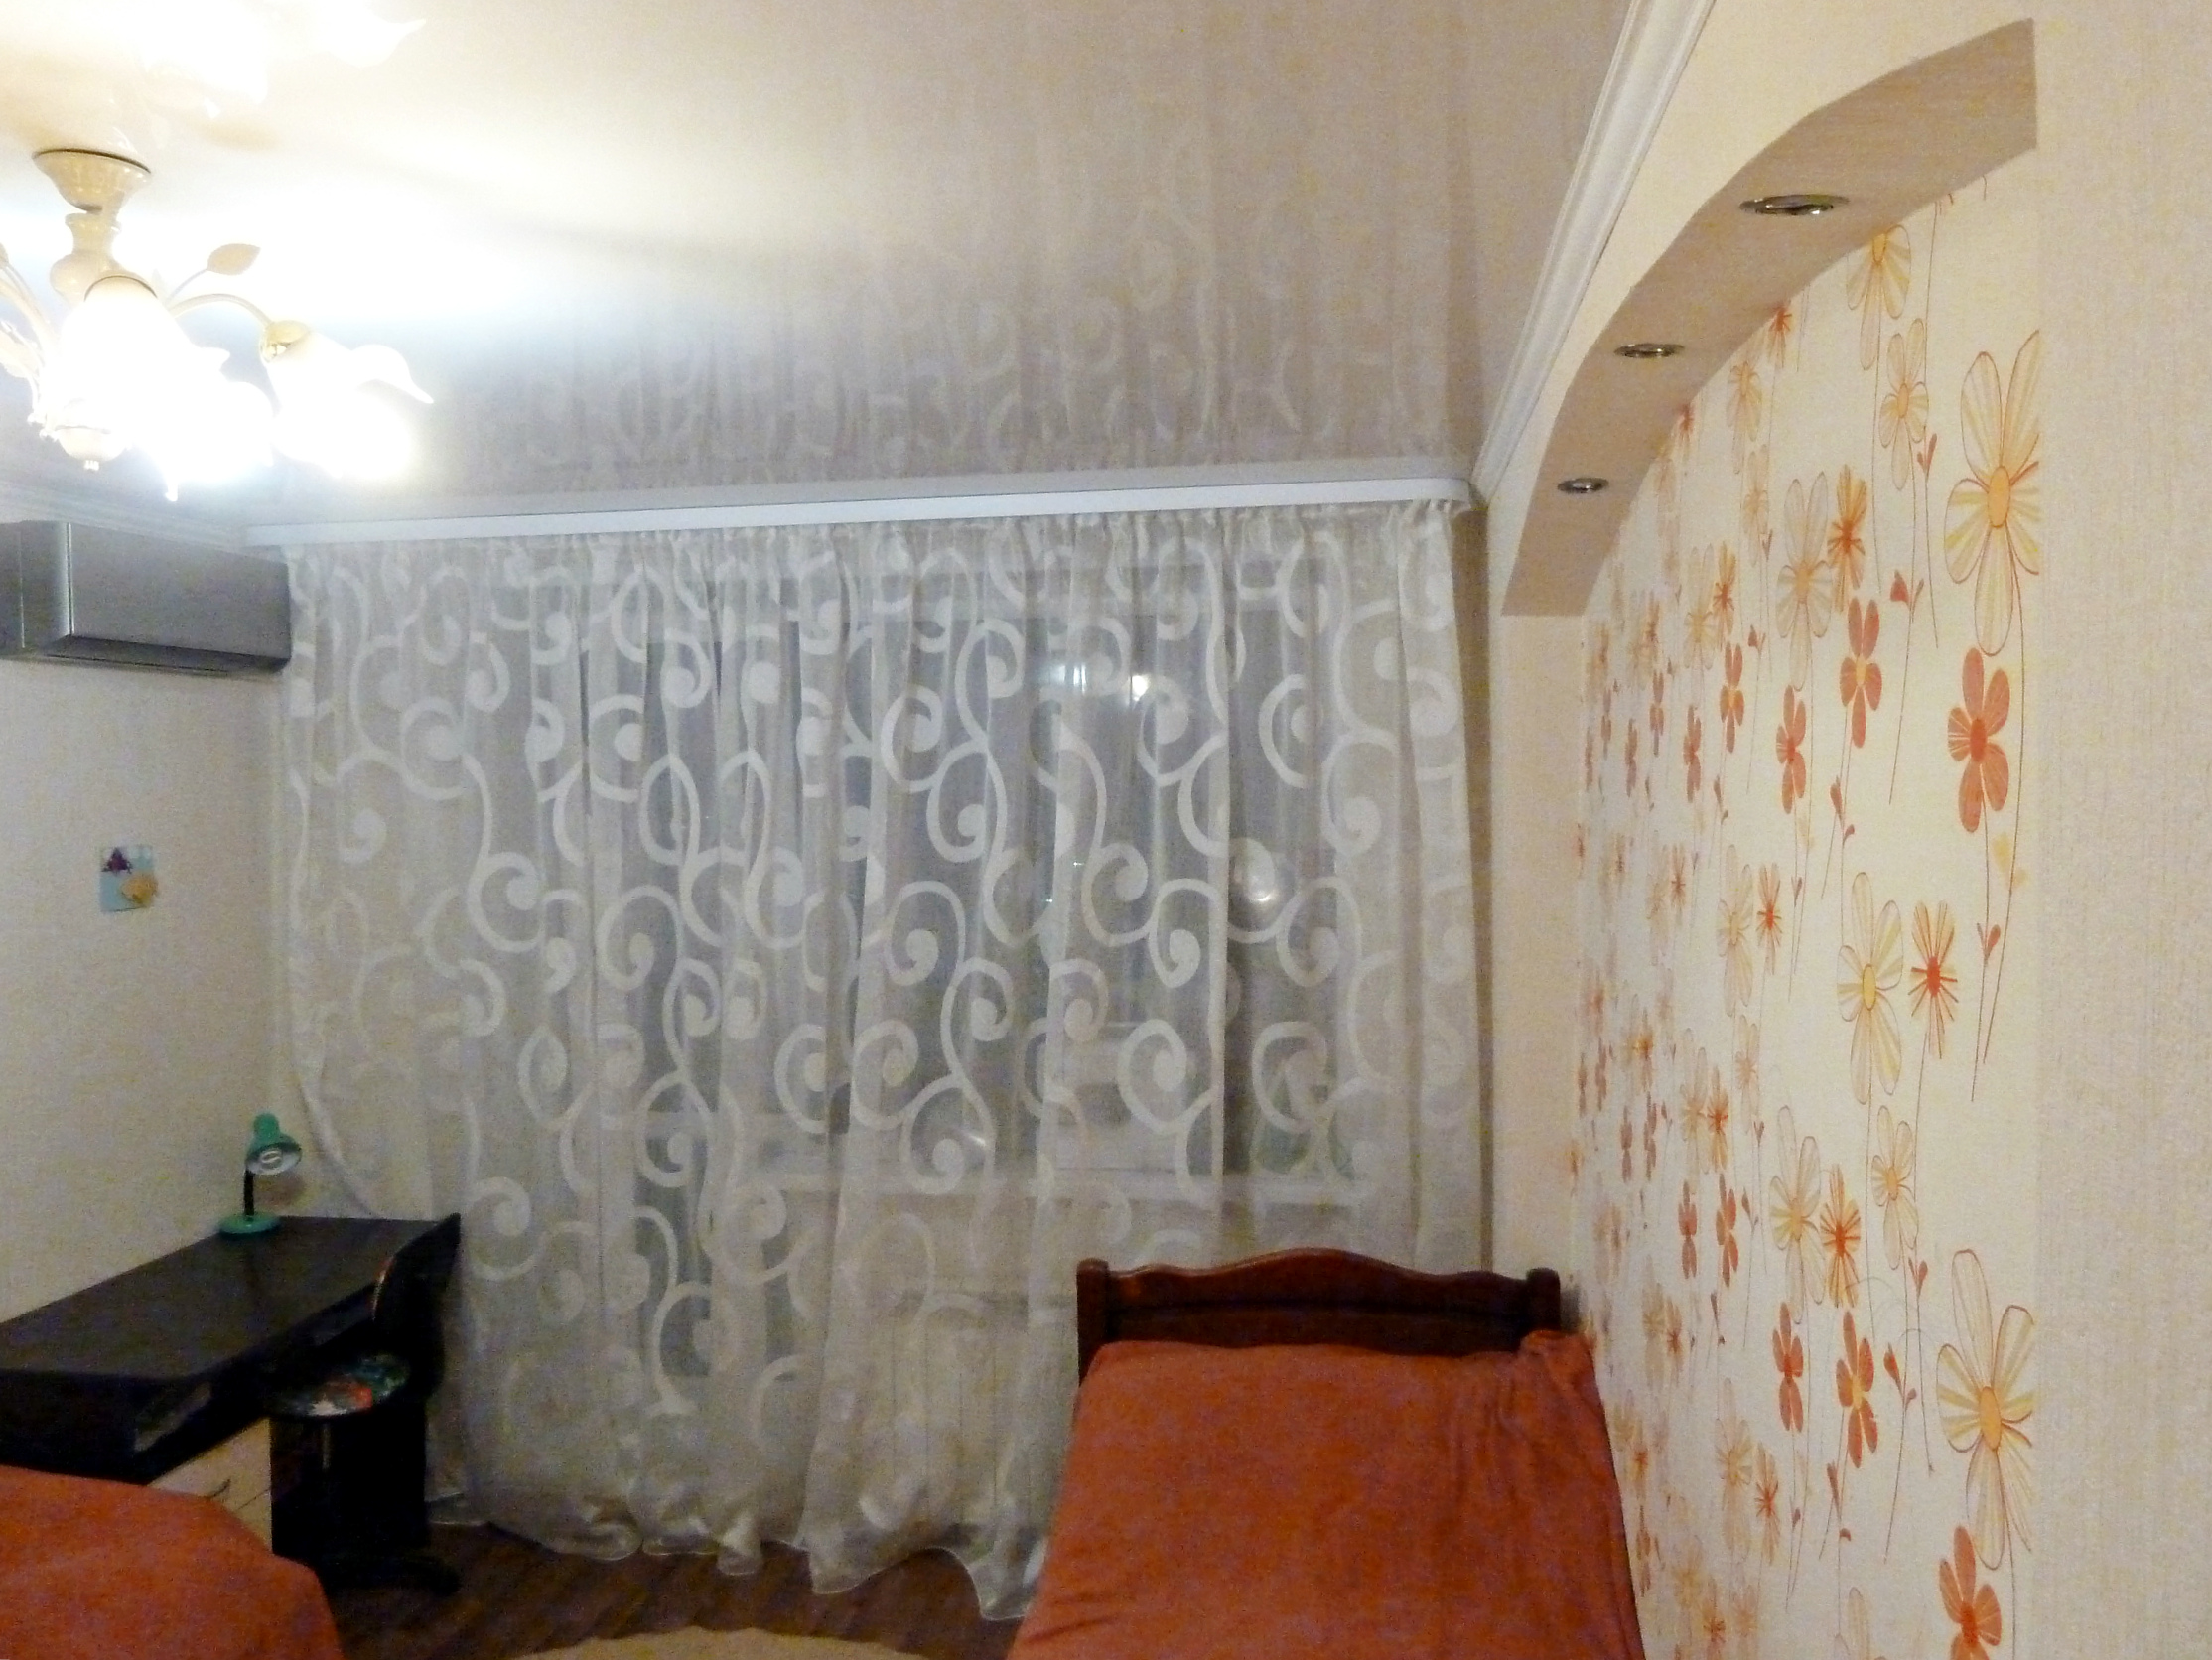 Квартира оренбург степной однокомнатная купить квартиру